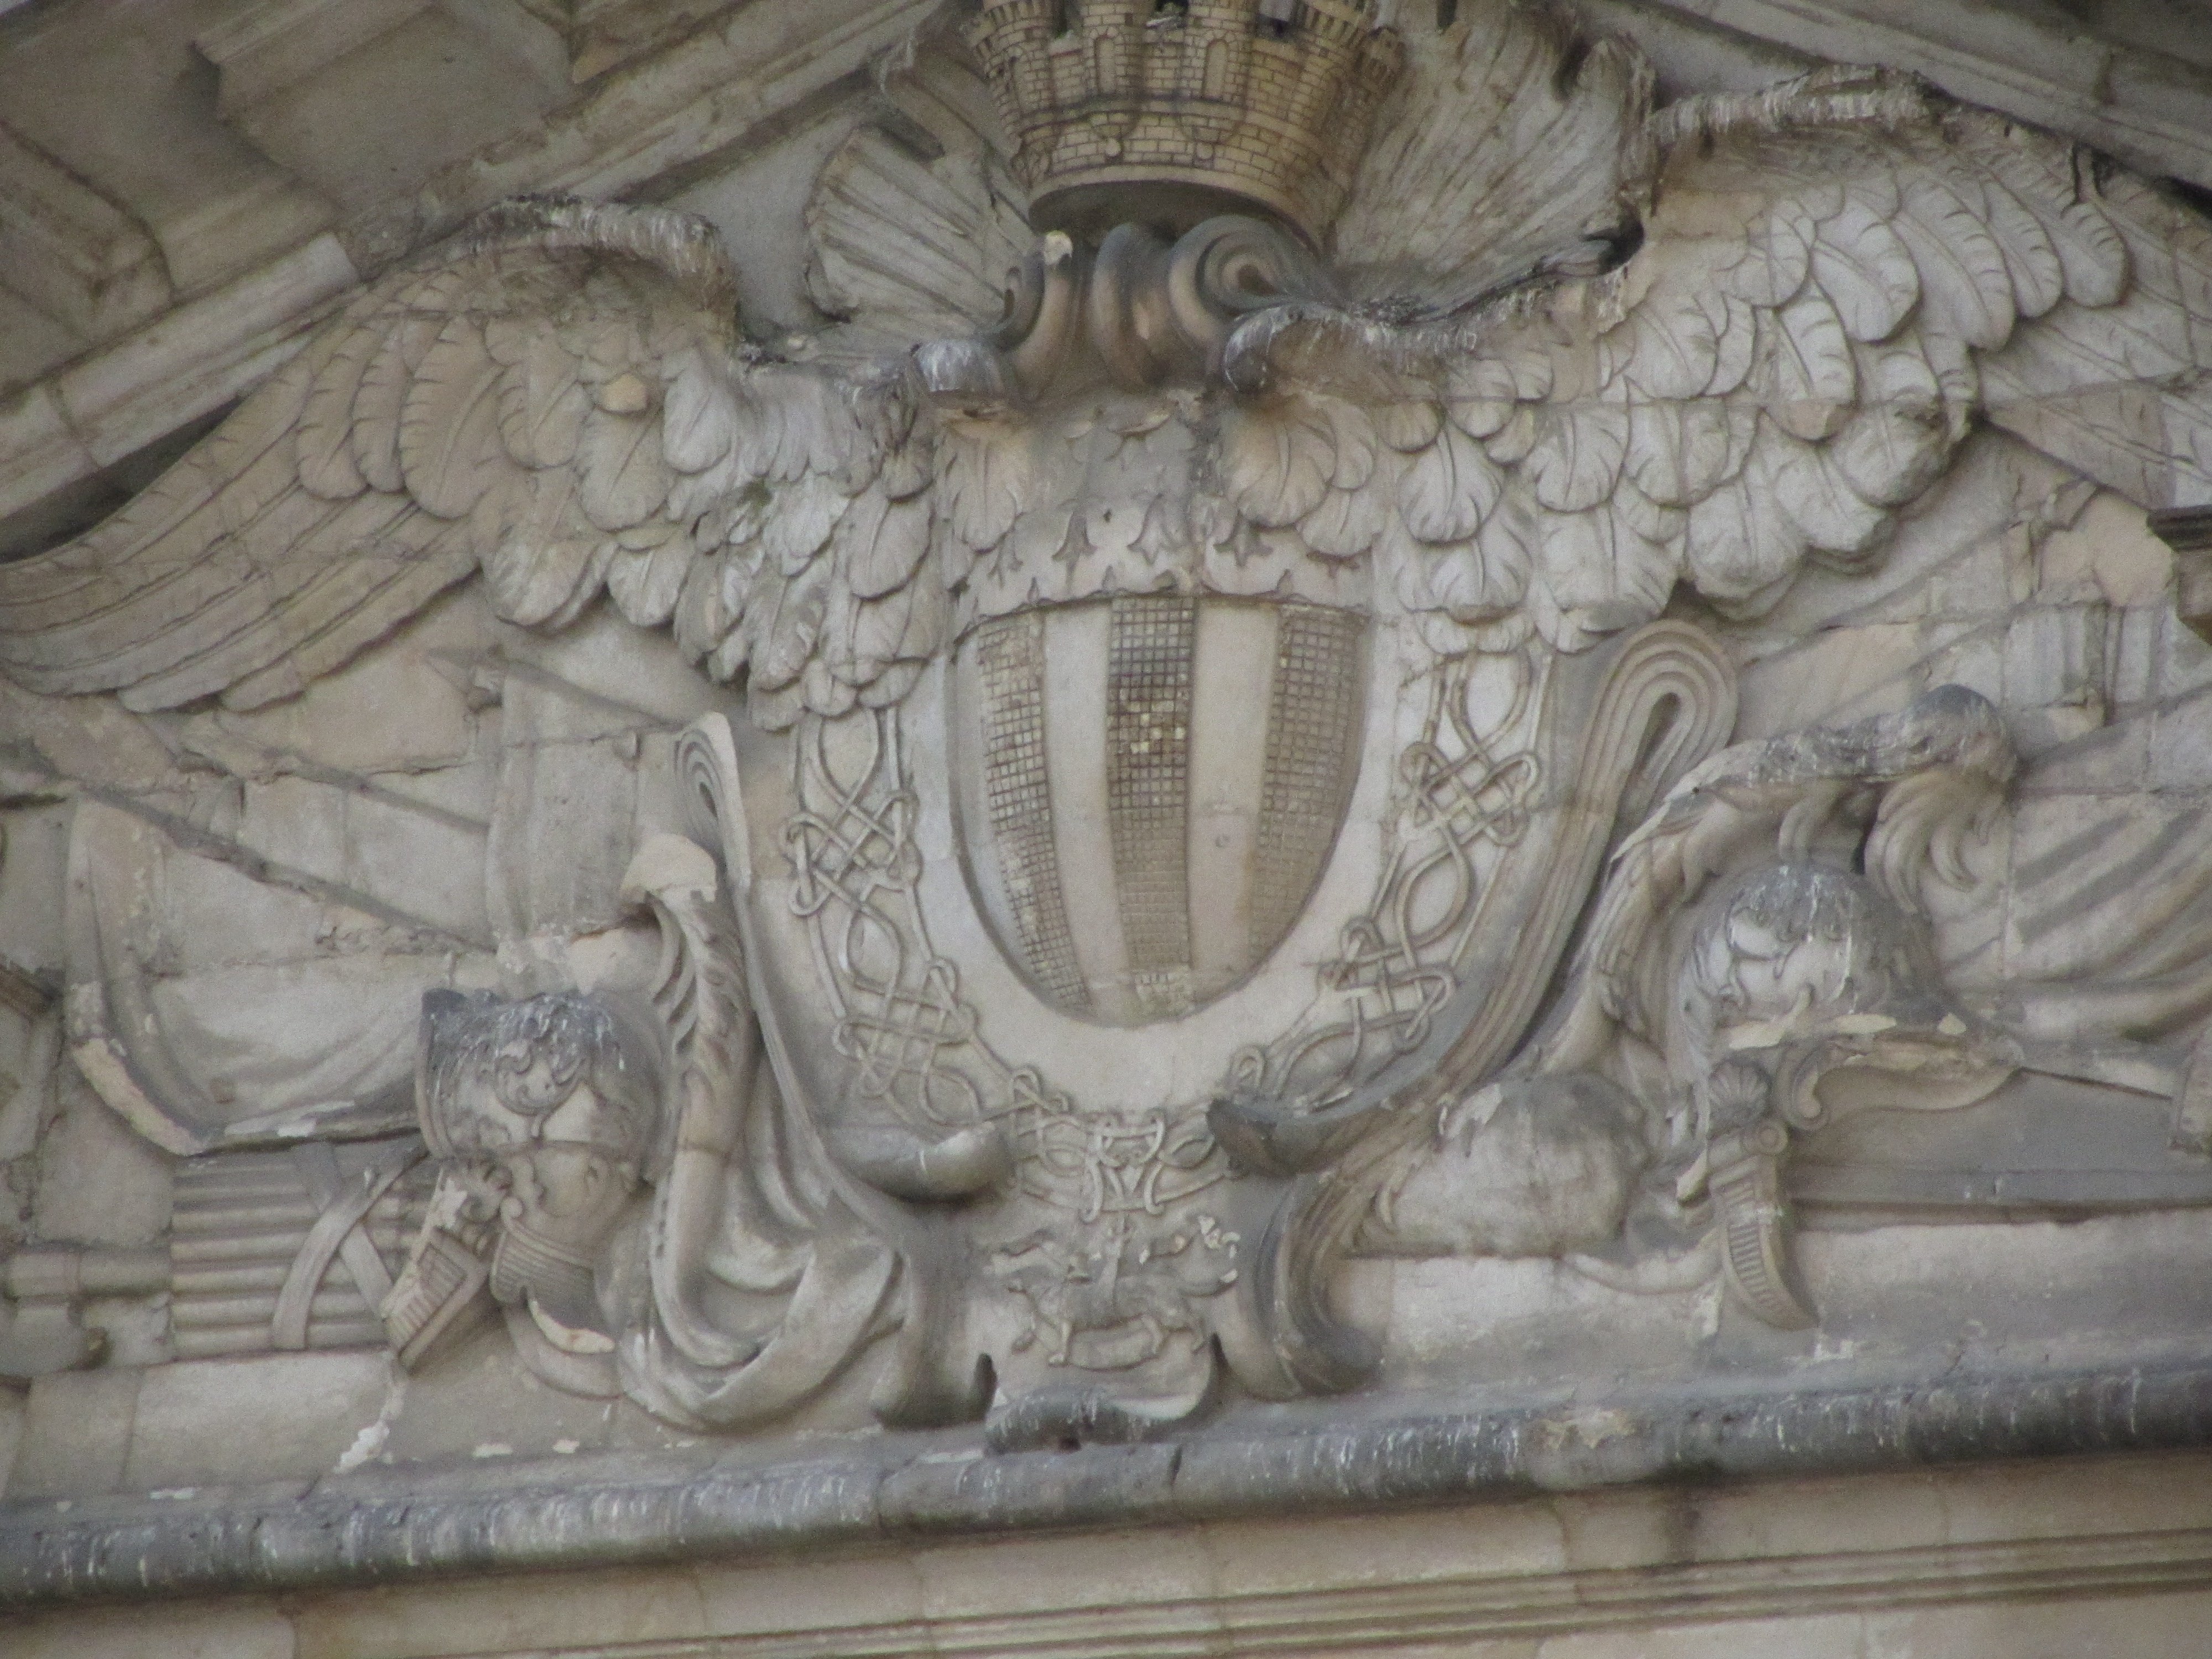 Bas-relief sculpté des armoiries de Rennes (Palé d’argent et de sable de six pièces, au chef d’argent chargé de cinq mouchetures d’hermine de sable)